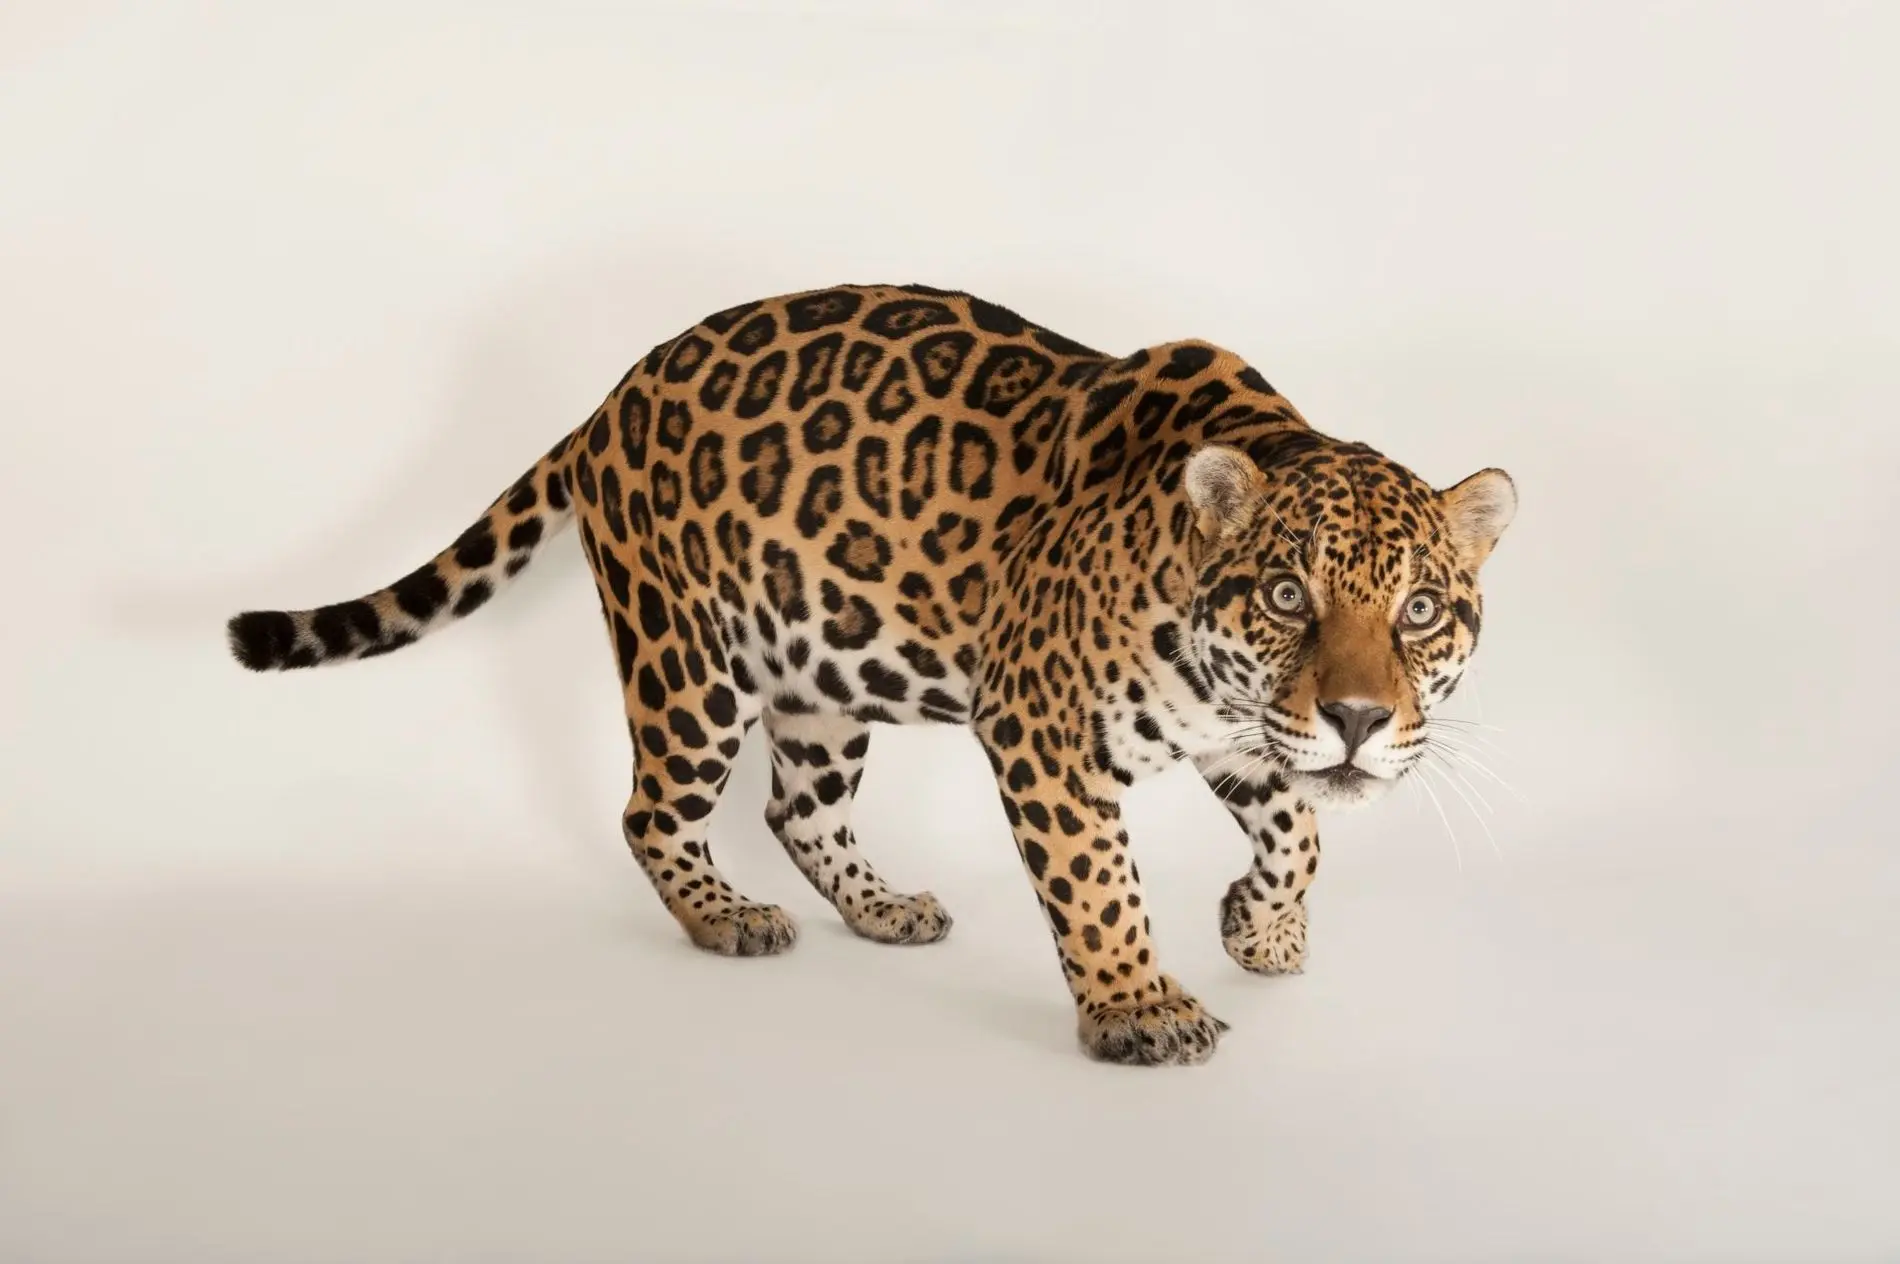 como se desarrollo el jaguar y cuan inteligente es - Qué es lo más importante del jaguar